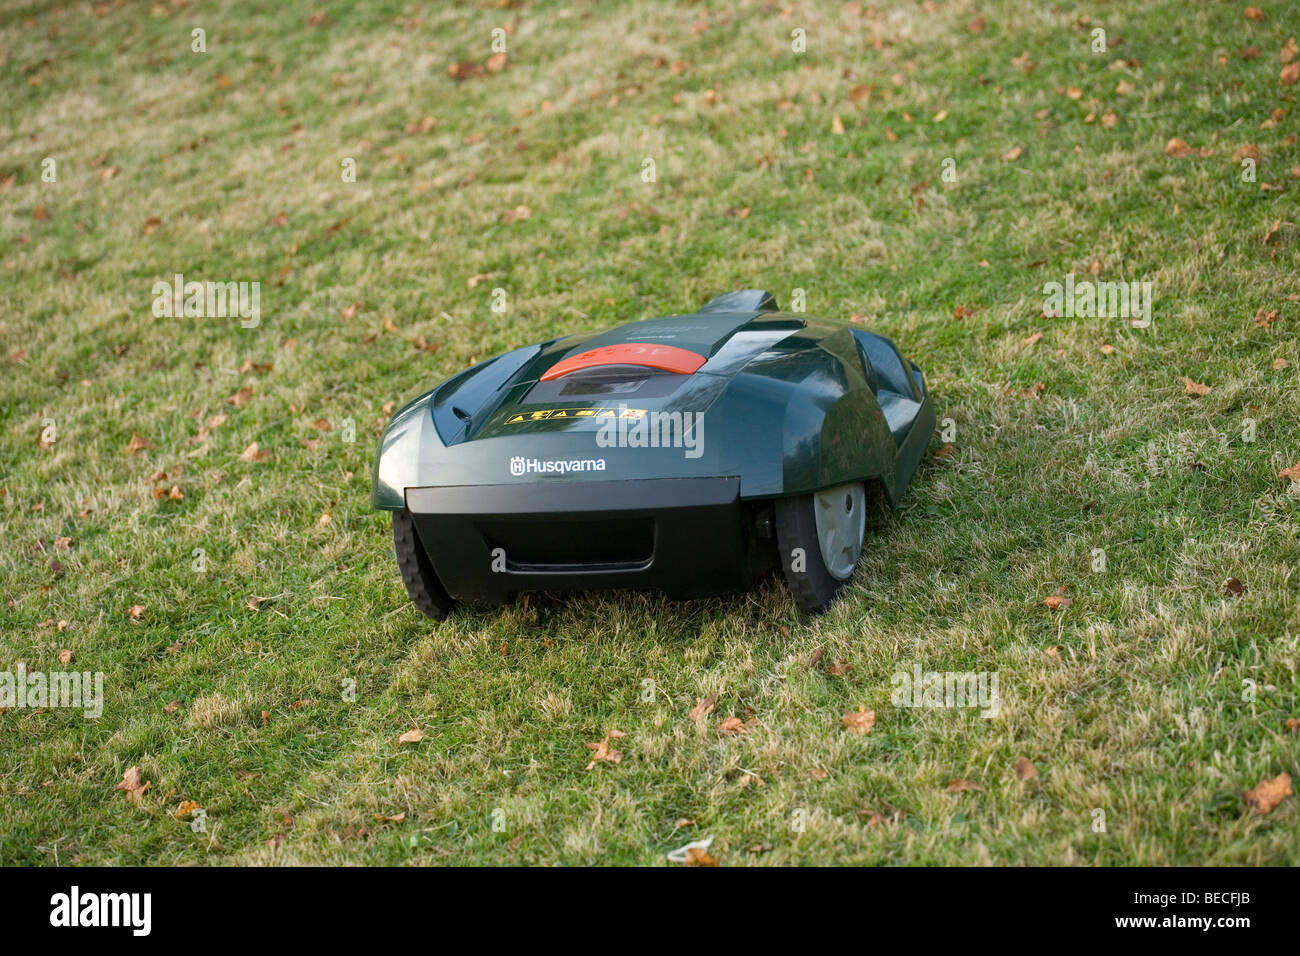 Tondeuse robot automatique coupé de l'herbe, vue arrière Banque D'Images